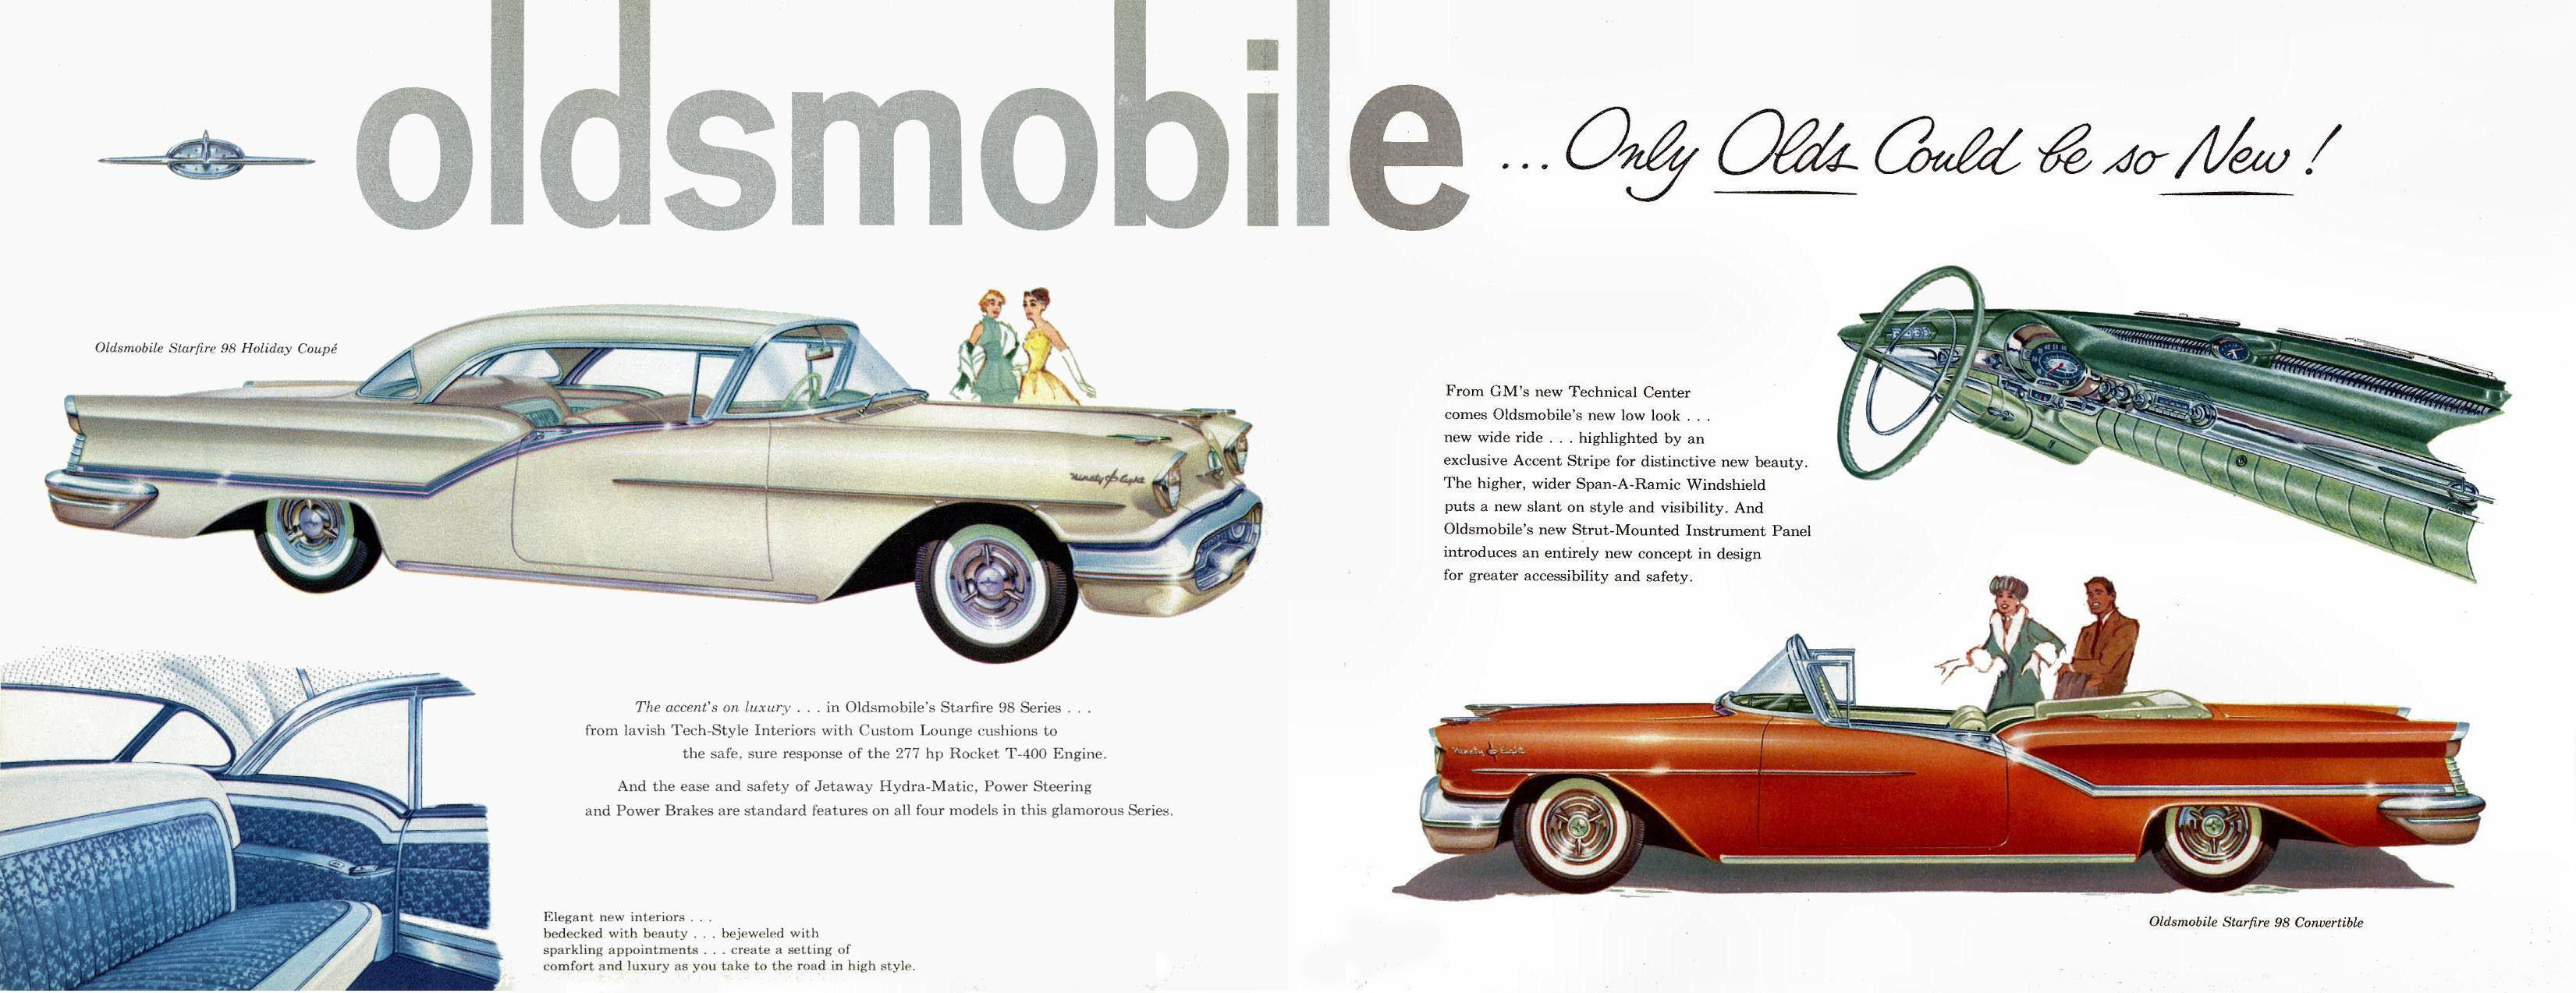 General Motors for 1957-12 amp 13